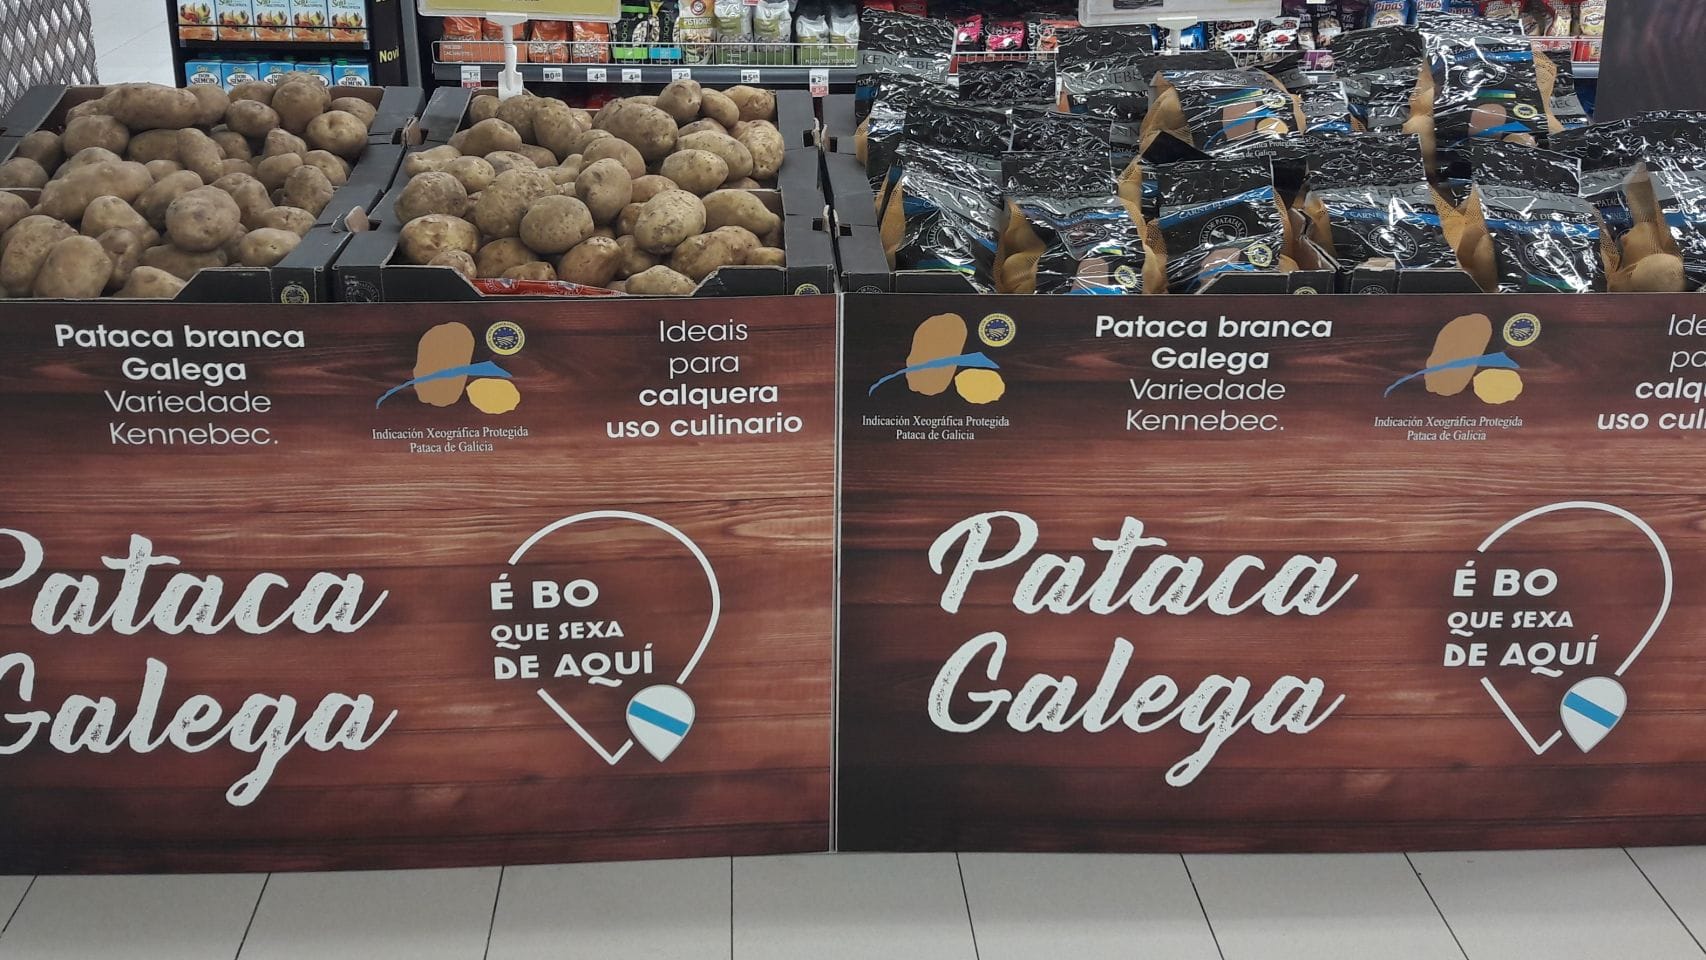 Patata gallega en un supermercado del grupo